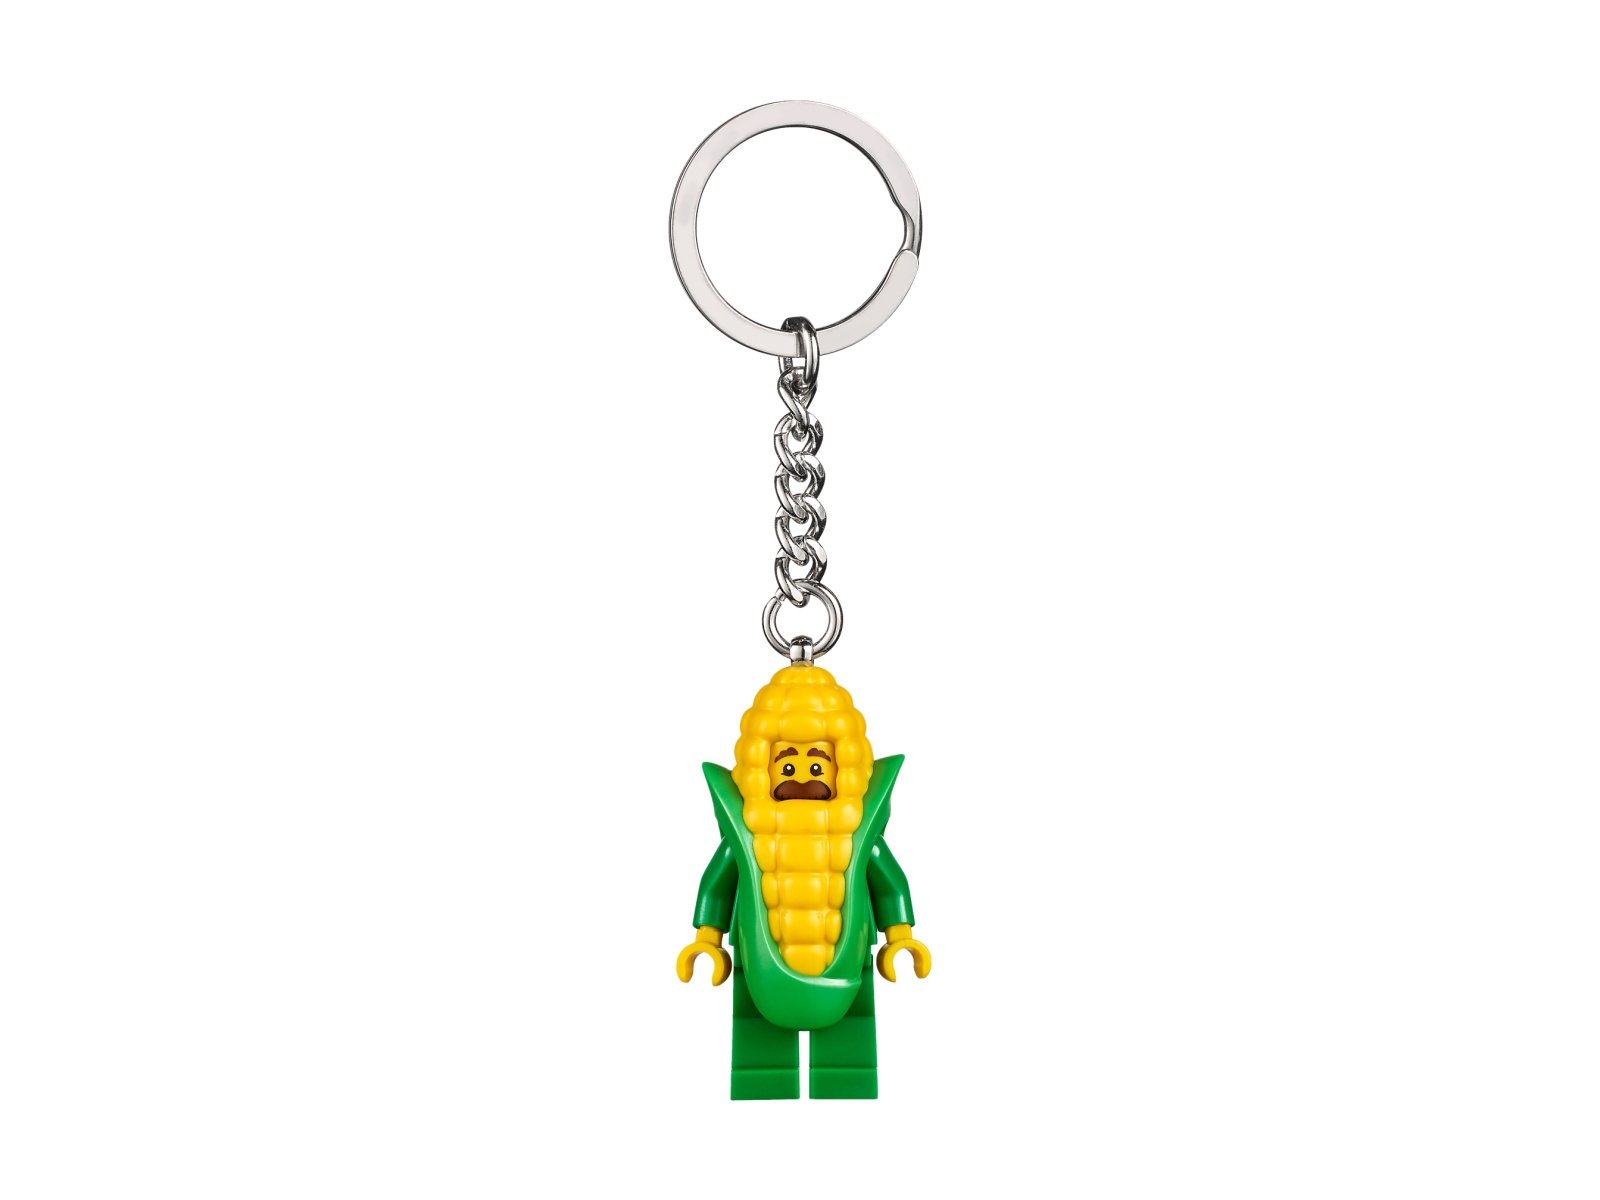 LEGO 853794 Breloczek z człowiekiem kolbą kukurydzy